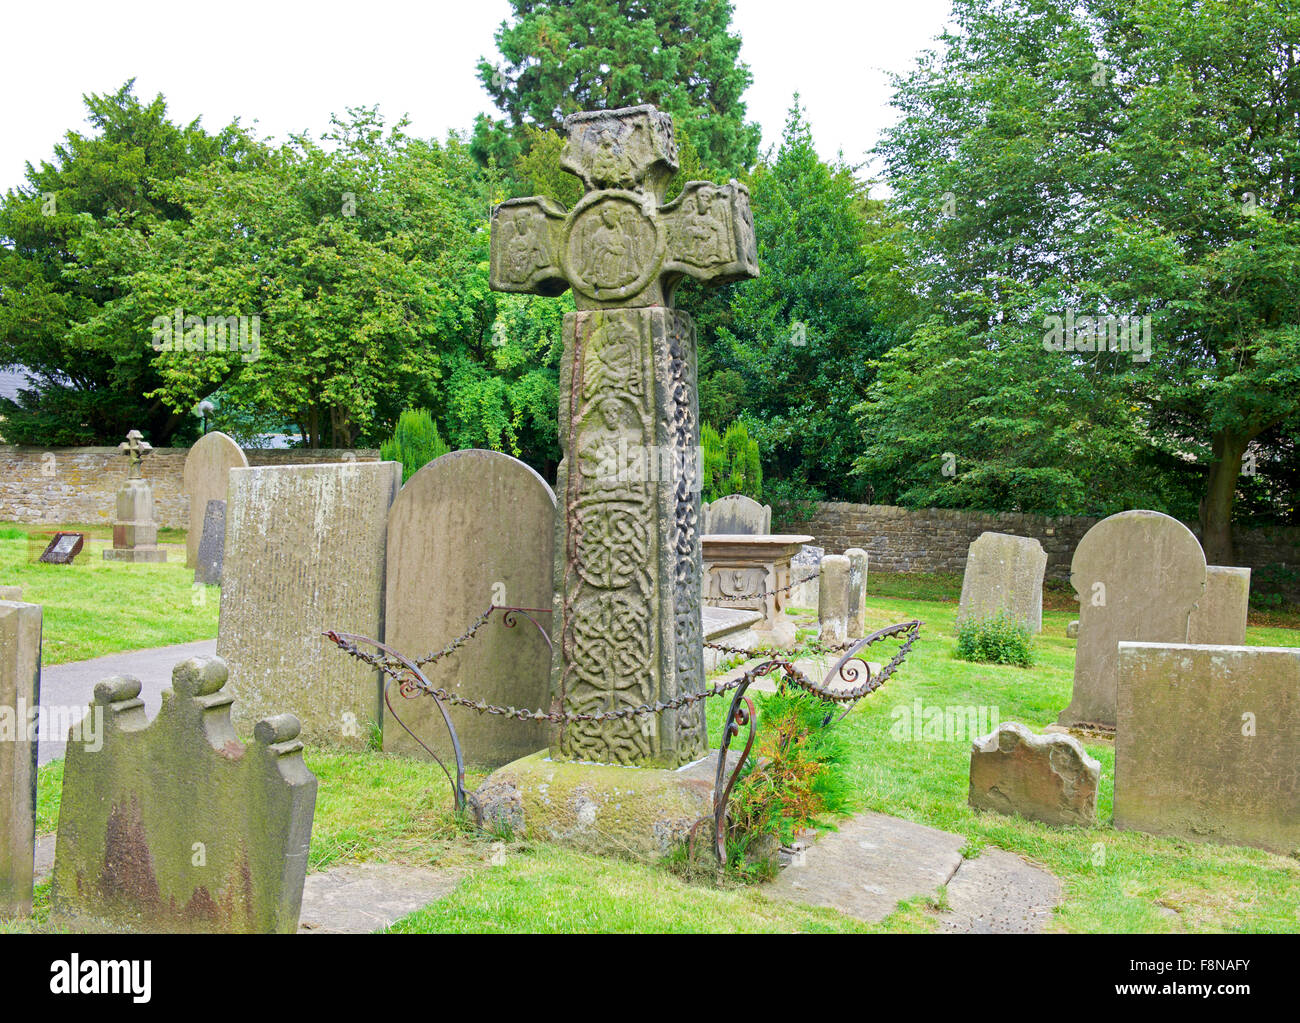 Croix celtique dans le cimetière de l'église Saint-Laurent, dans le village d'Eyam, parc national de Peak, Derbyshire, Angleterre, Royaume-Uni Banque D'Images